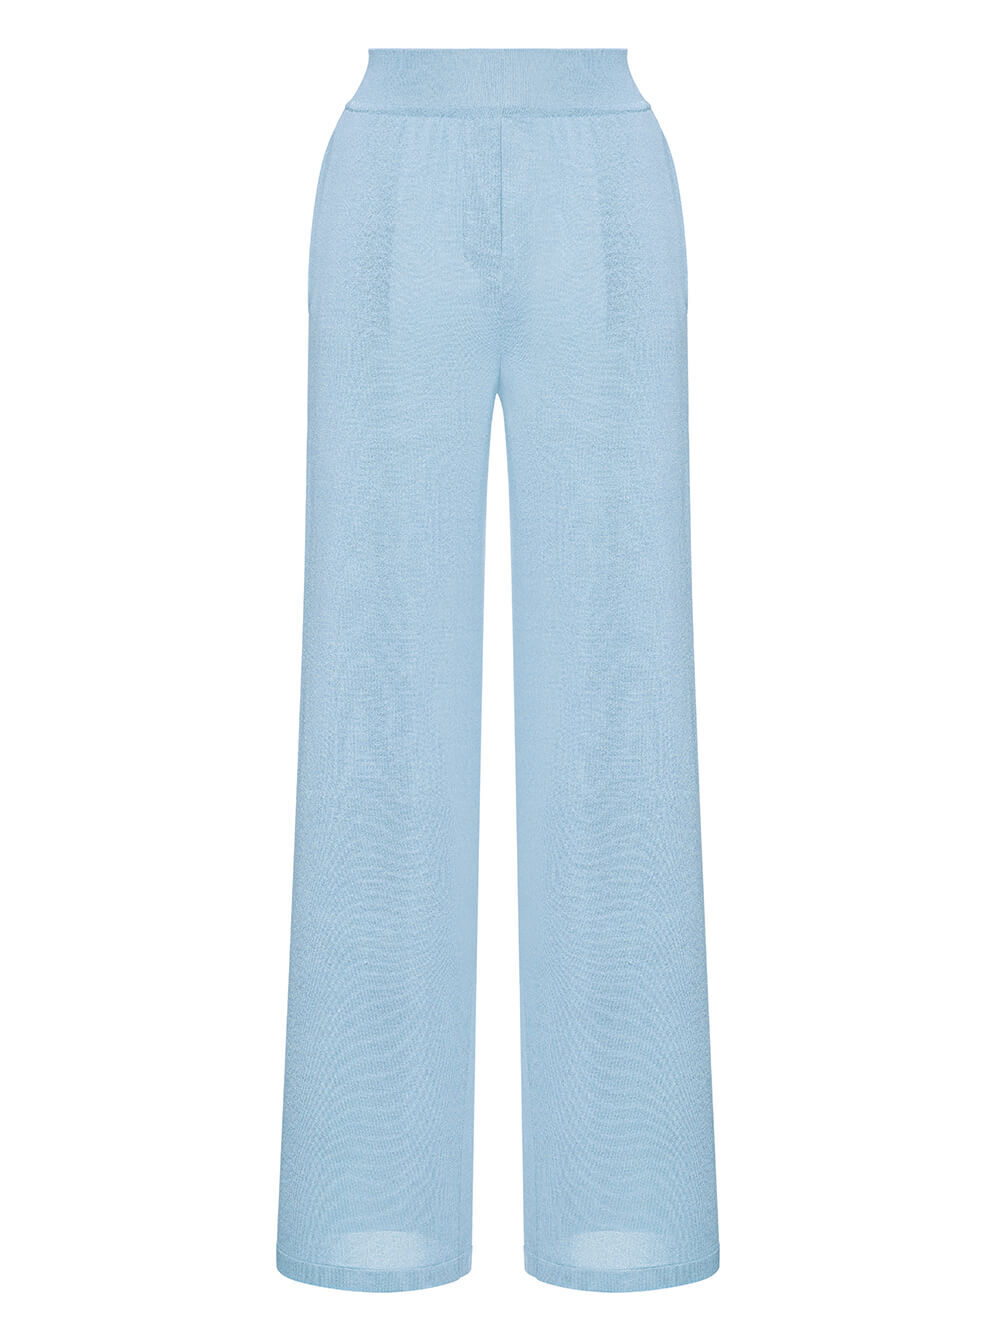 Женские брюки голубого цвета из шелка и вискозы - фото 1